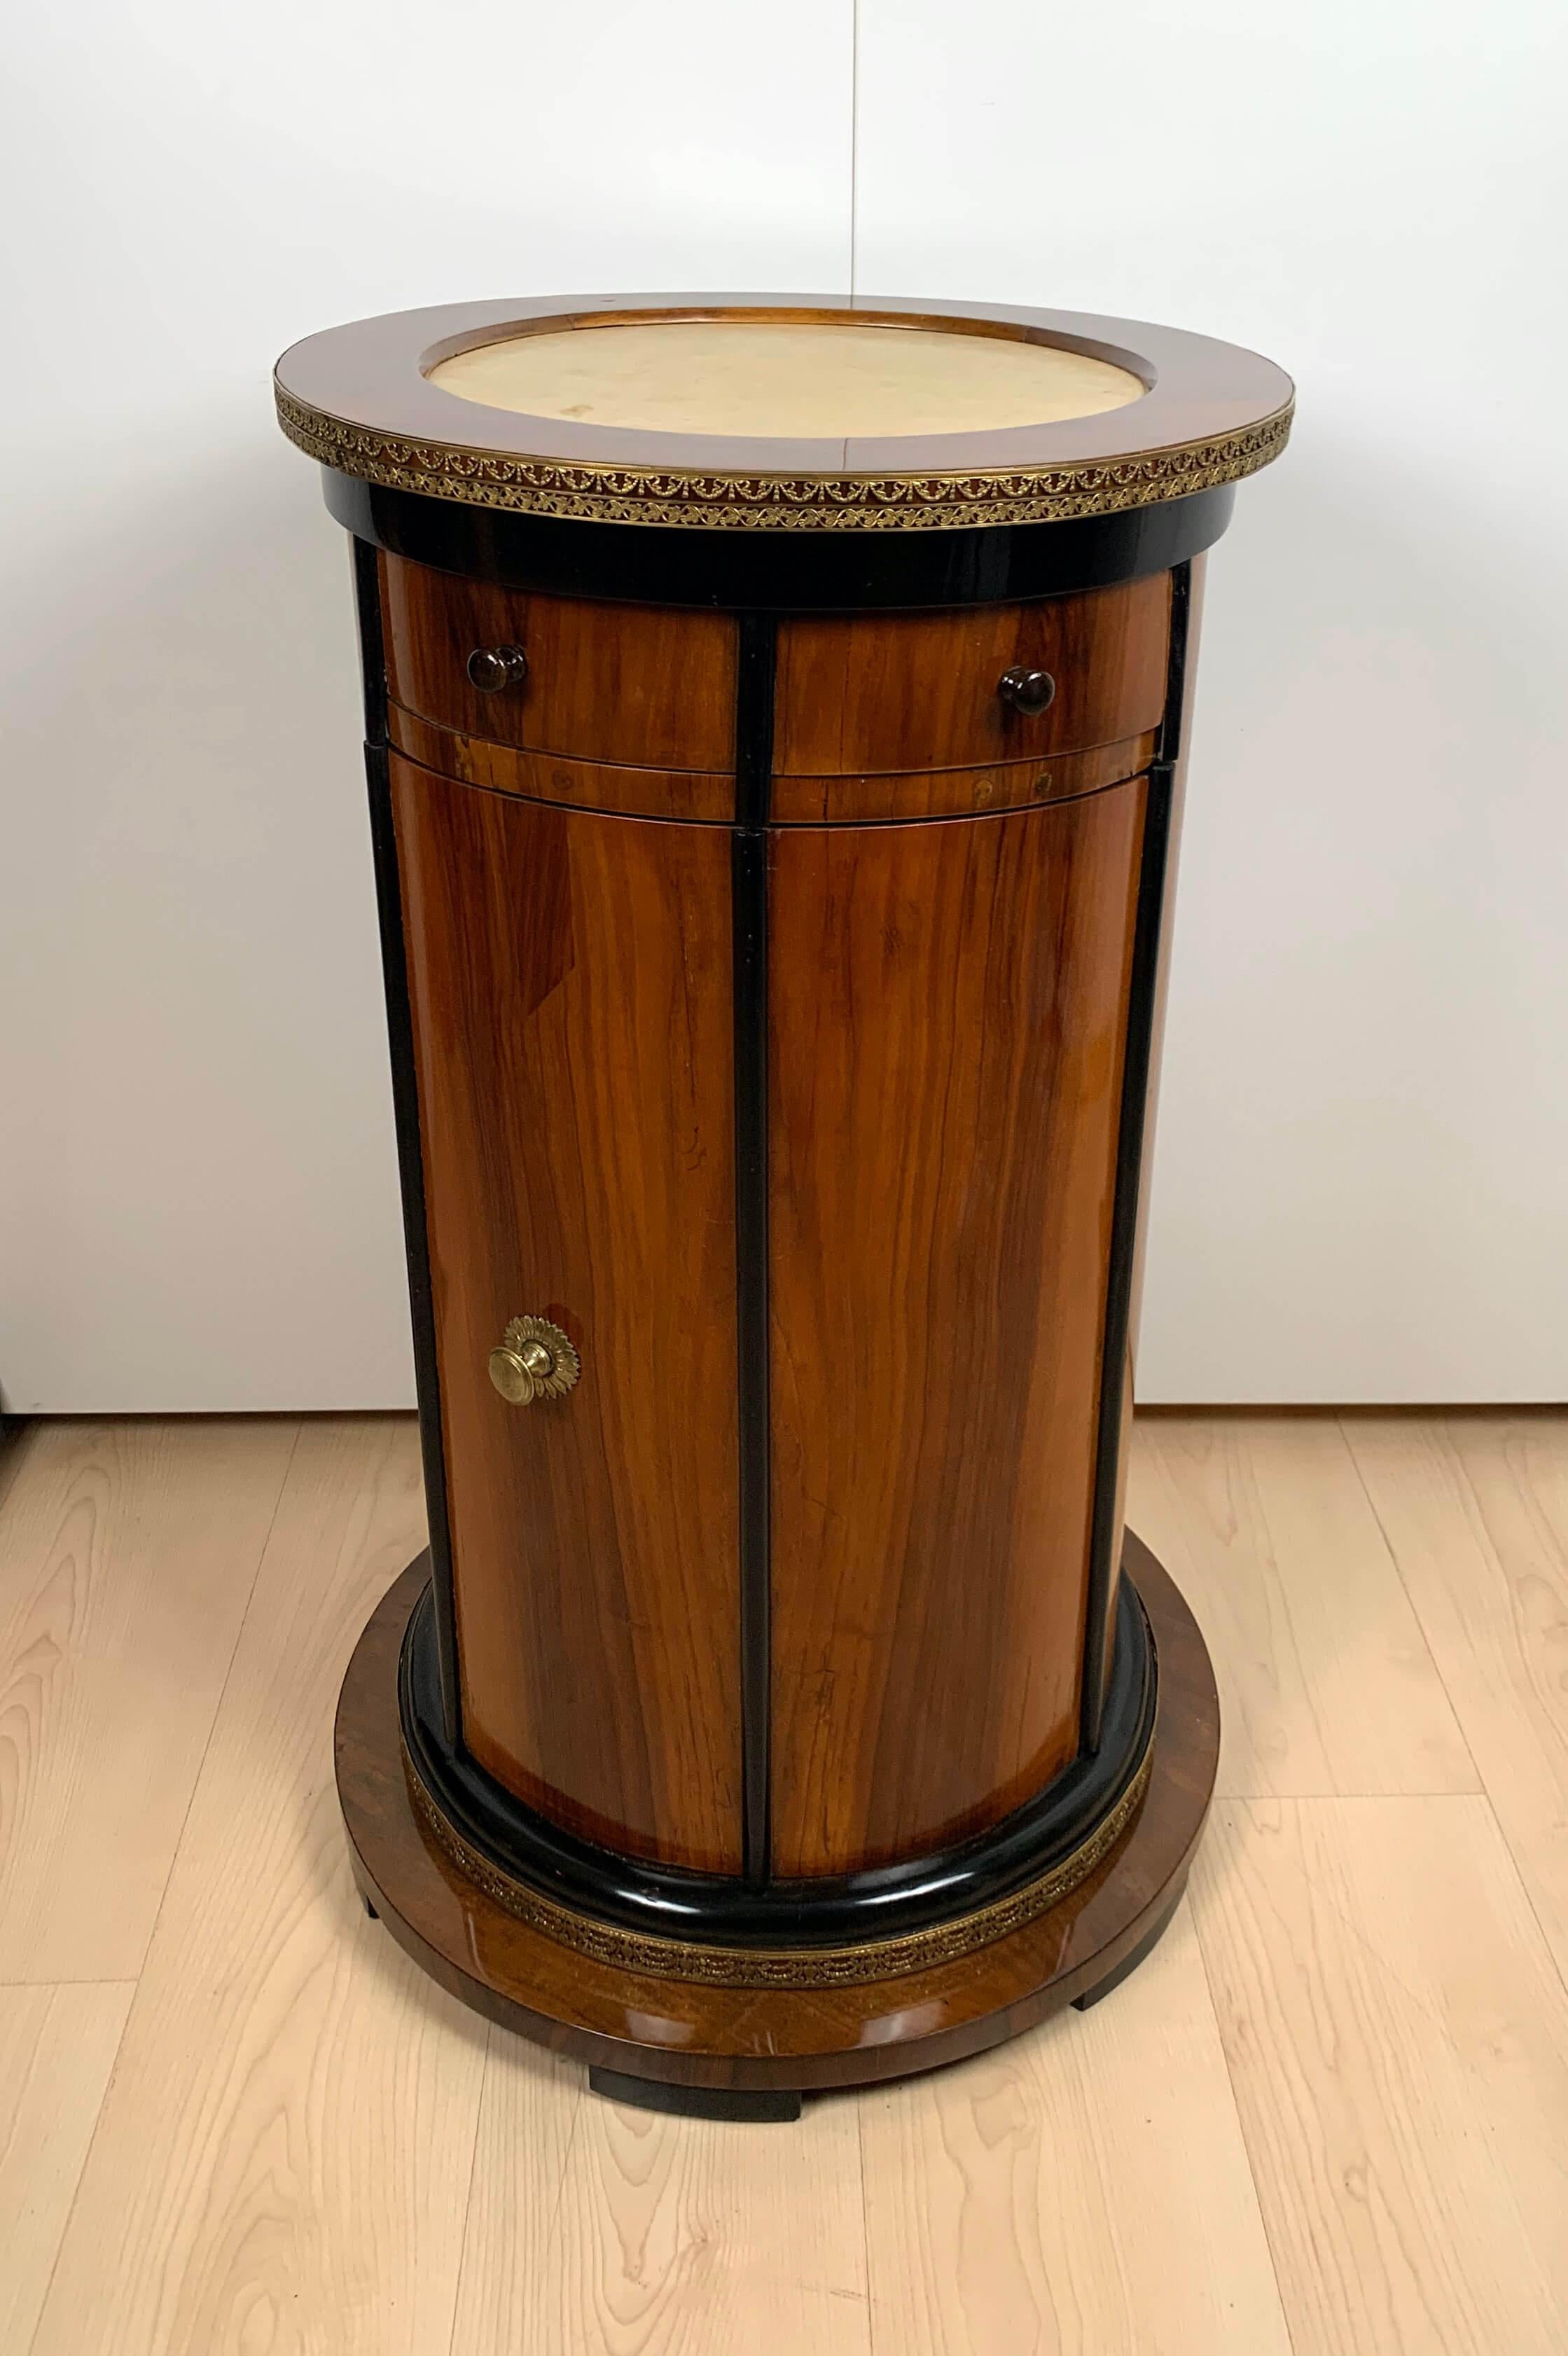 Magnificent restored Biedermeier period drum cabinet / drum table from Austria / Vienna around 1830. Walnut veneered on softwood (pine) and solid walnut, ebonized decorative strips.
Recessed 